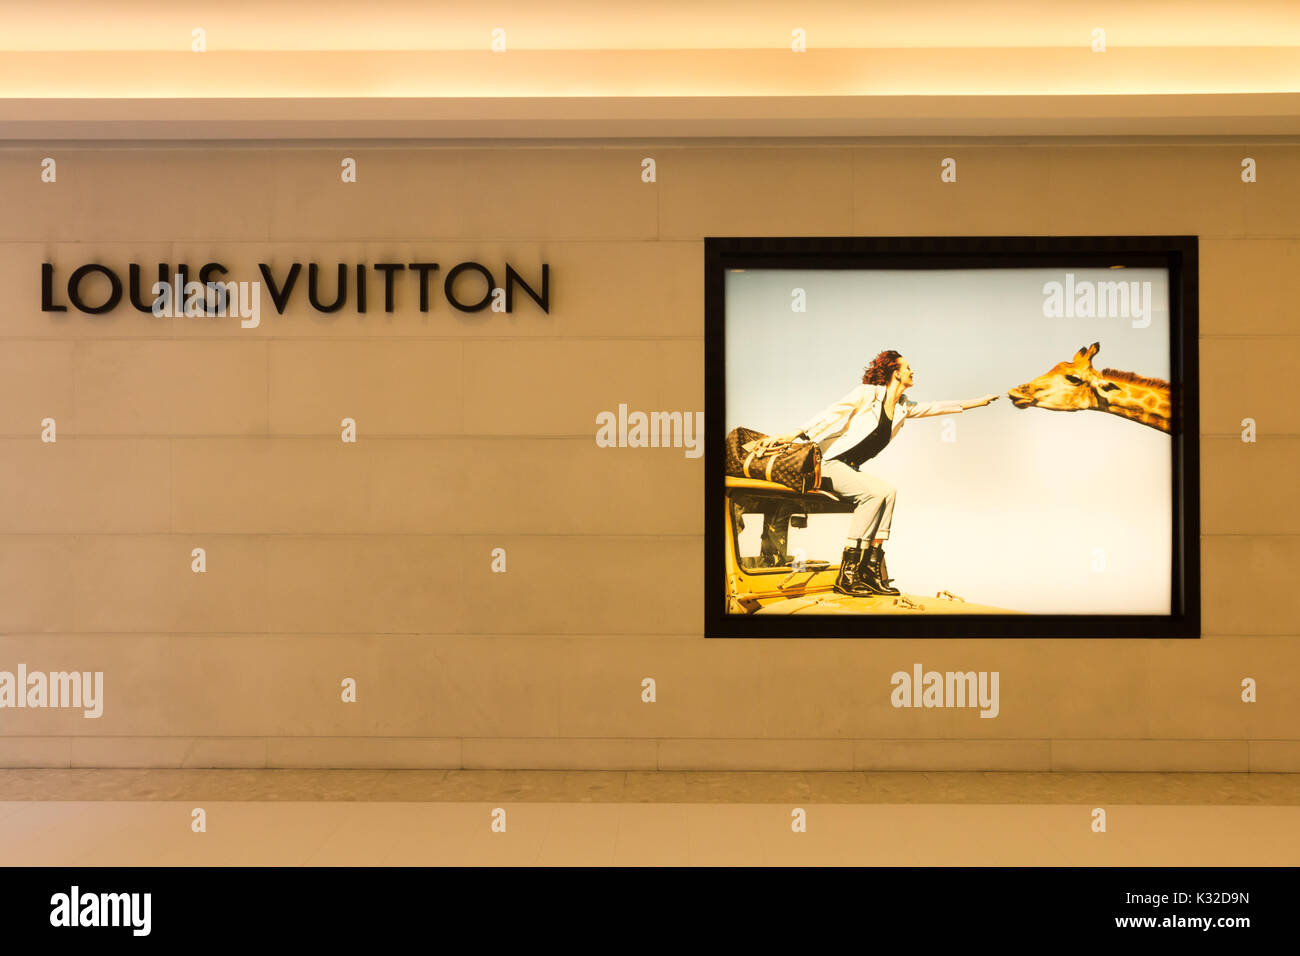 Louis Vuitton Shop Emporium Bangkok Thailand Stock Photo